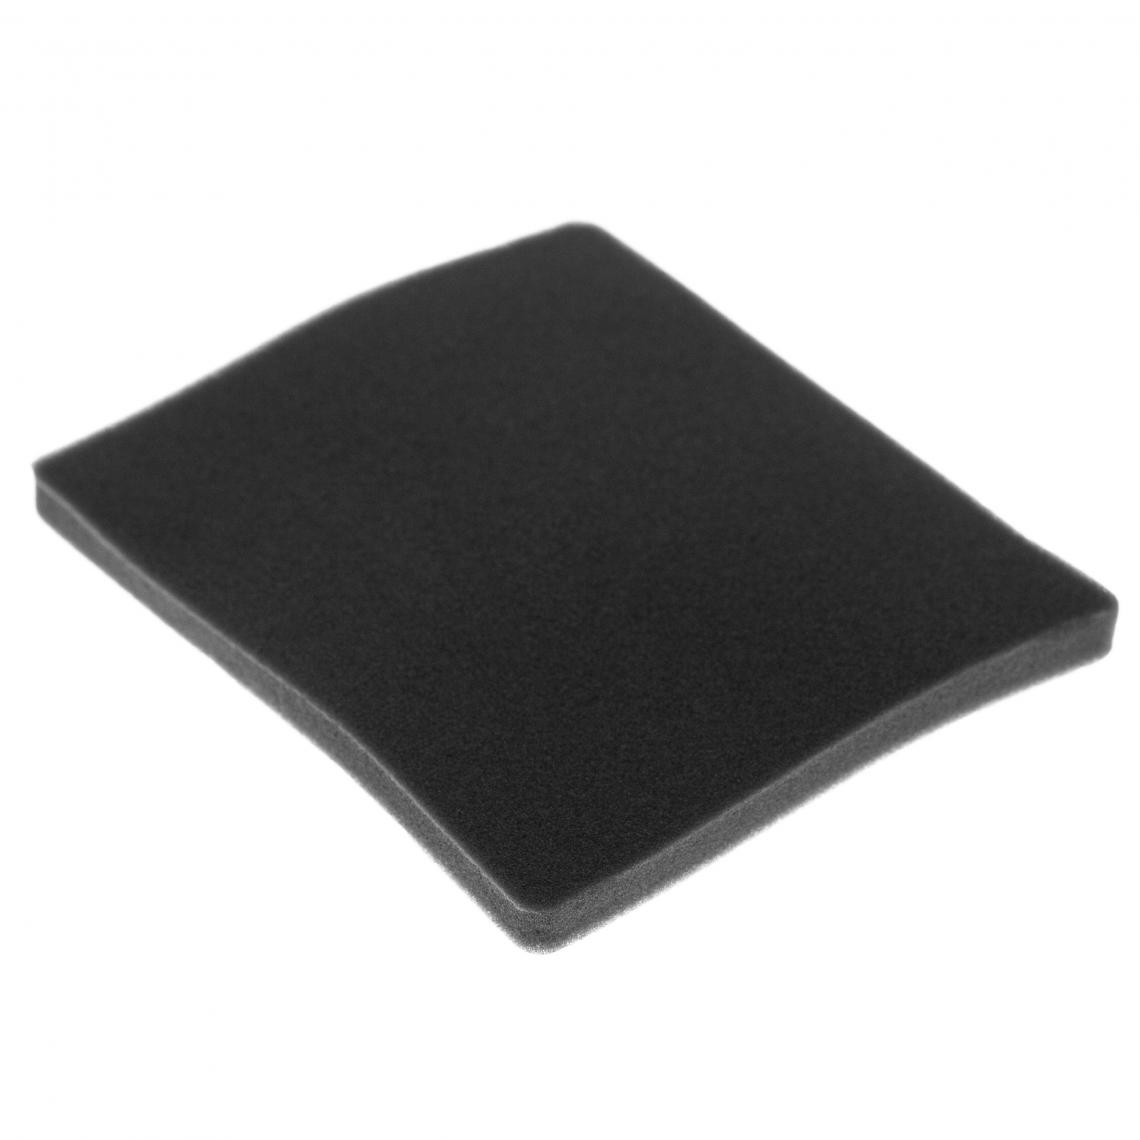 Vhbw - vhbw Filtre compatible avec Electrolux ZCX6470 (910288784) aspirateur - filtre de sortie d'air (filtre éponge), noir - Accessoire entretien des sols